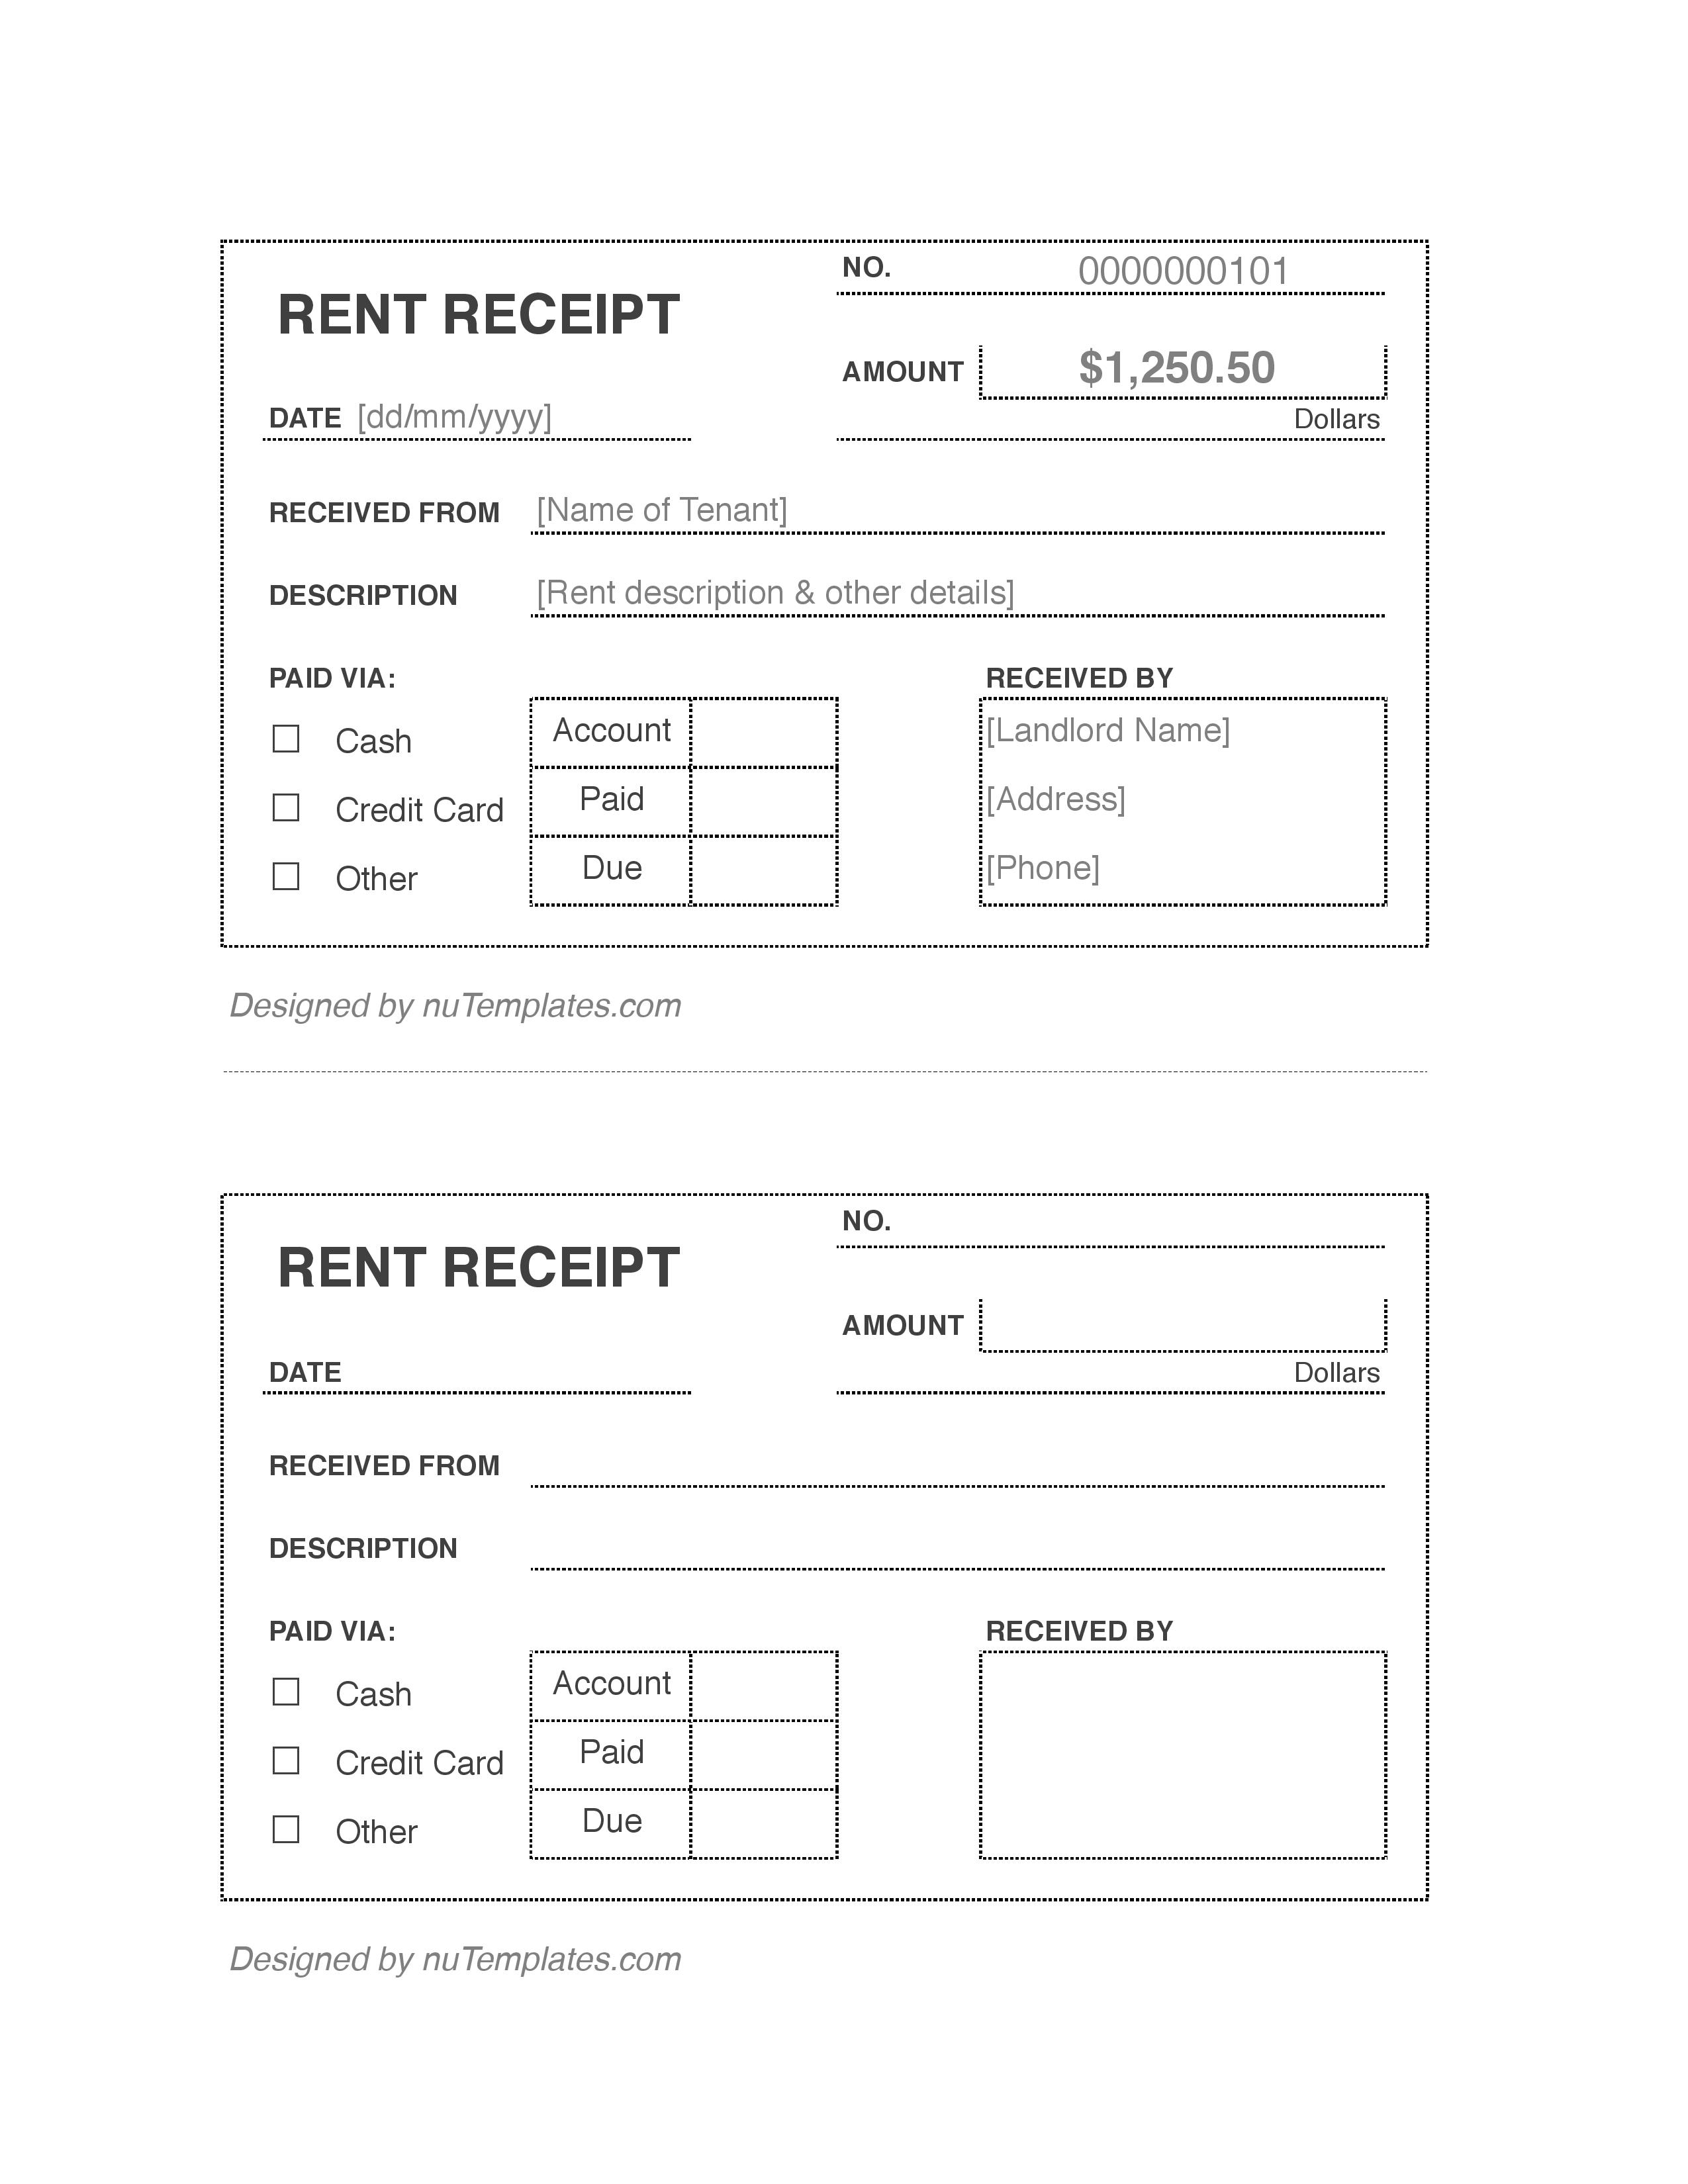 rent-receipt-template-rent-receipts-nutemplates